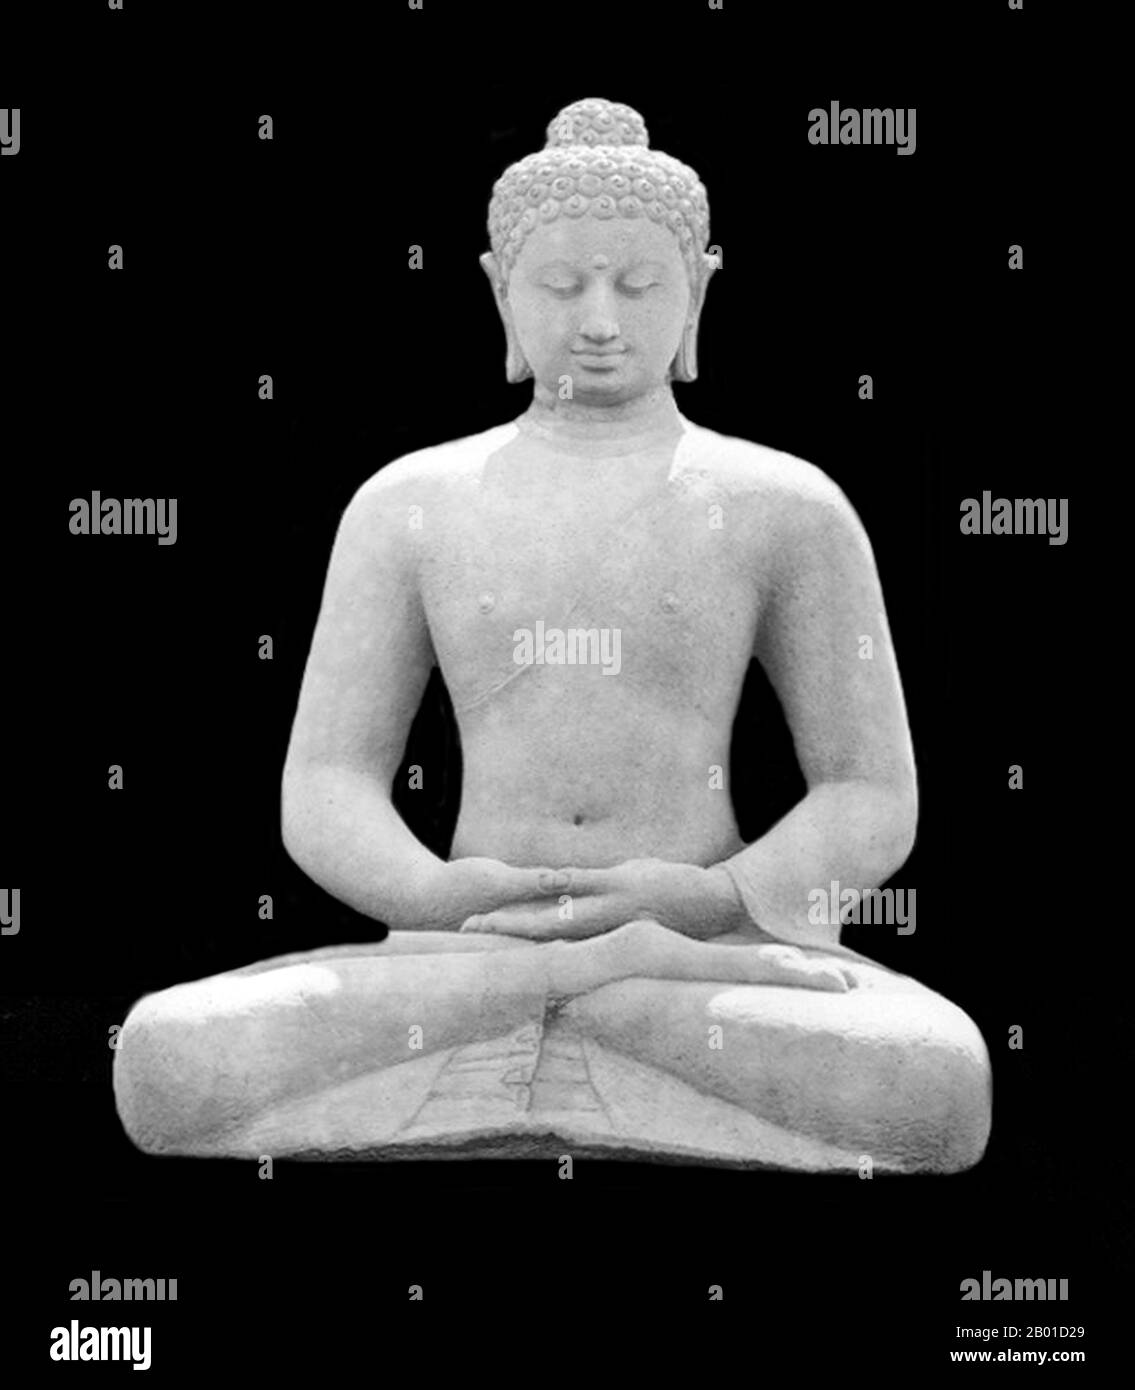 Indonésie : image Amitabha de Bouddha assis dans la mudra dhyana (représentant la concentration et la méditation), de la balustrade occidentale de Borobodur. Borobudur est un monument bouddhiste du Mahayana datant de 8th ans, près de Magelang, dans le centre de Java, en Indonésie. Le monument comprend six plates-formes carrées surmontées de trois plates-formes circulaires, et est décoré de 2 672 panneaux de relief et 504 statues de Bouddha. Un dôme principal, situé au centre de la plate-forme supérieure, est entouré de 72 statues de Bouddha placées à l'intérieur d'un stupa perforé. Le monument est à la fois un sanctuaire du Bouddha et un lieu de pèlerinage bouddhiste. Banque D'Images